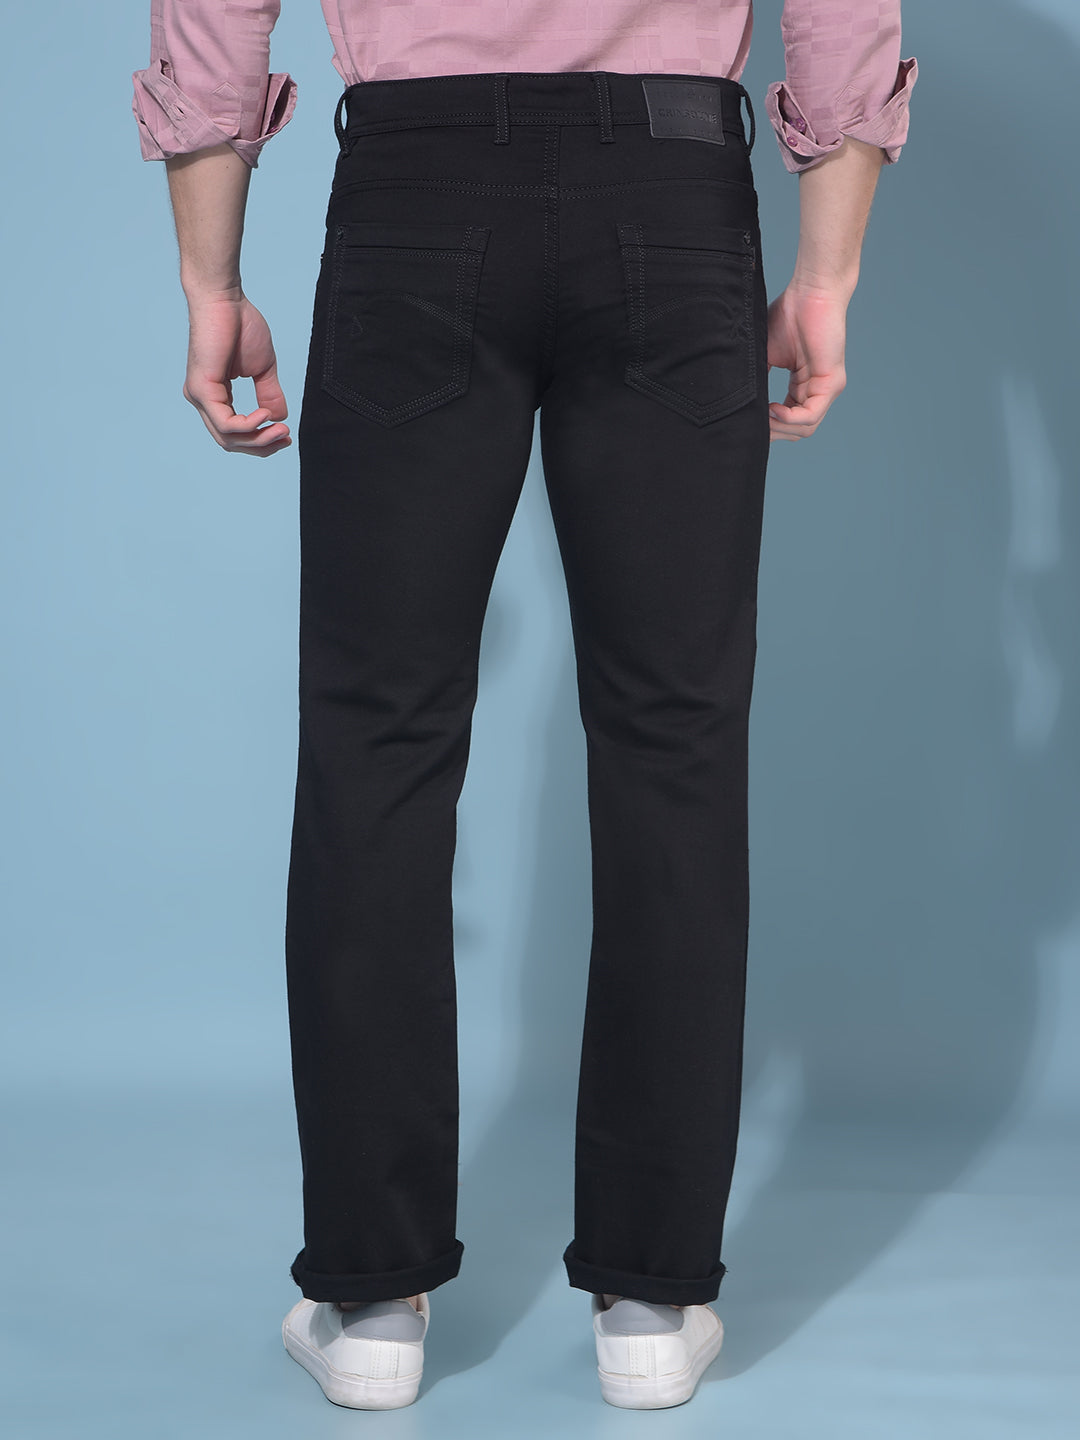 Black Straight Stretchable Jeans-Men Jeans-Crimsoune Club